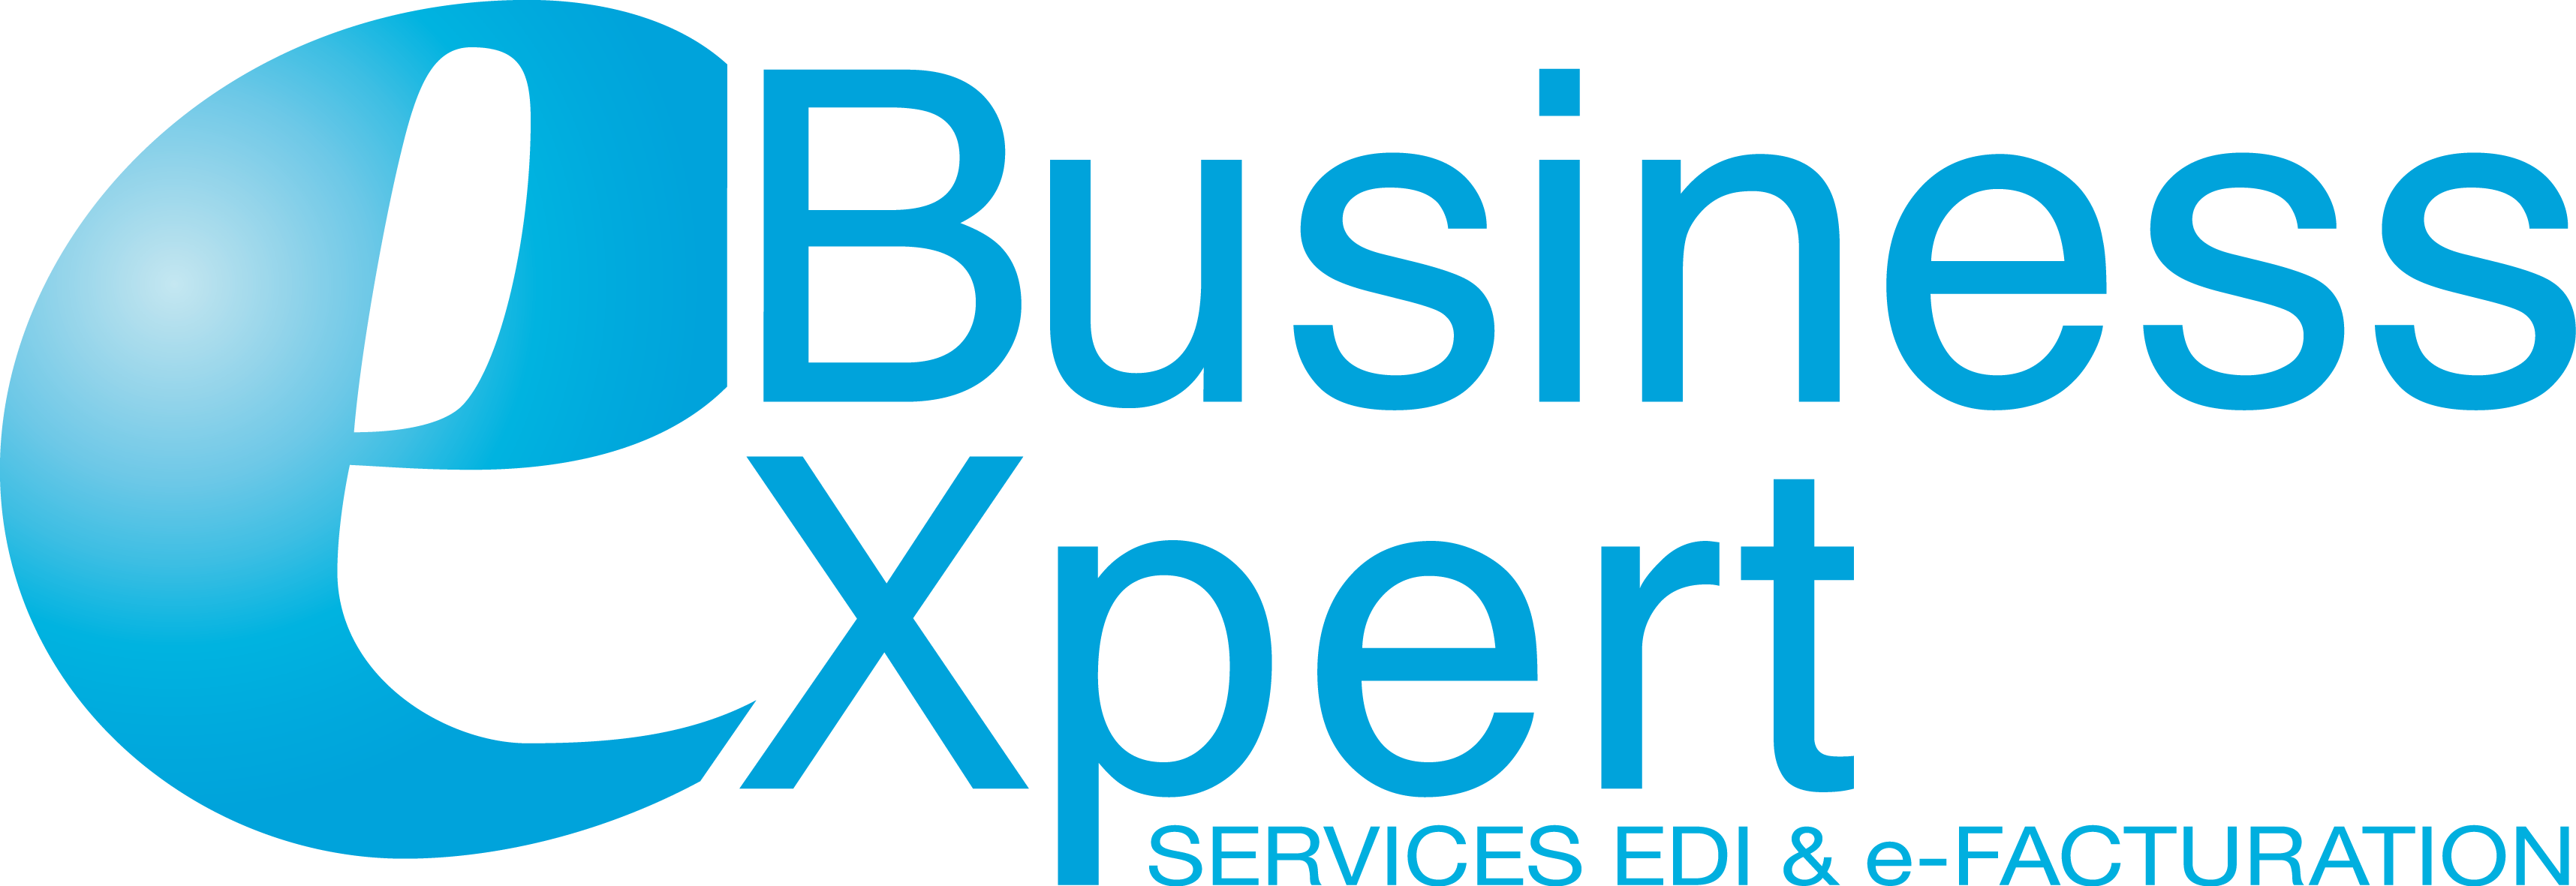 E-business Expert